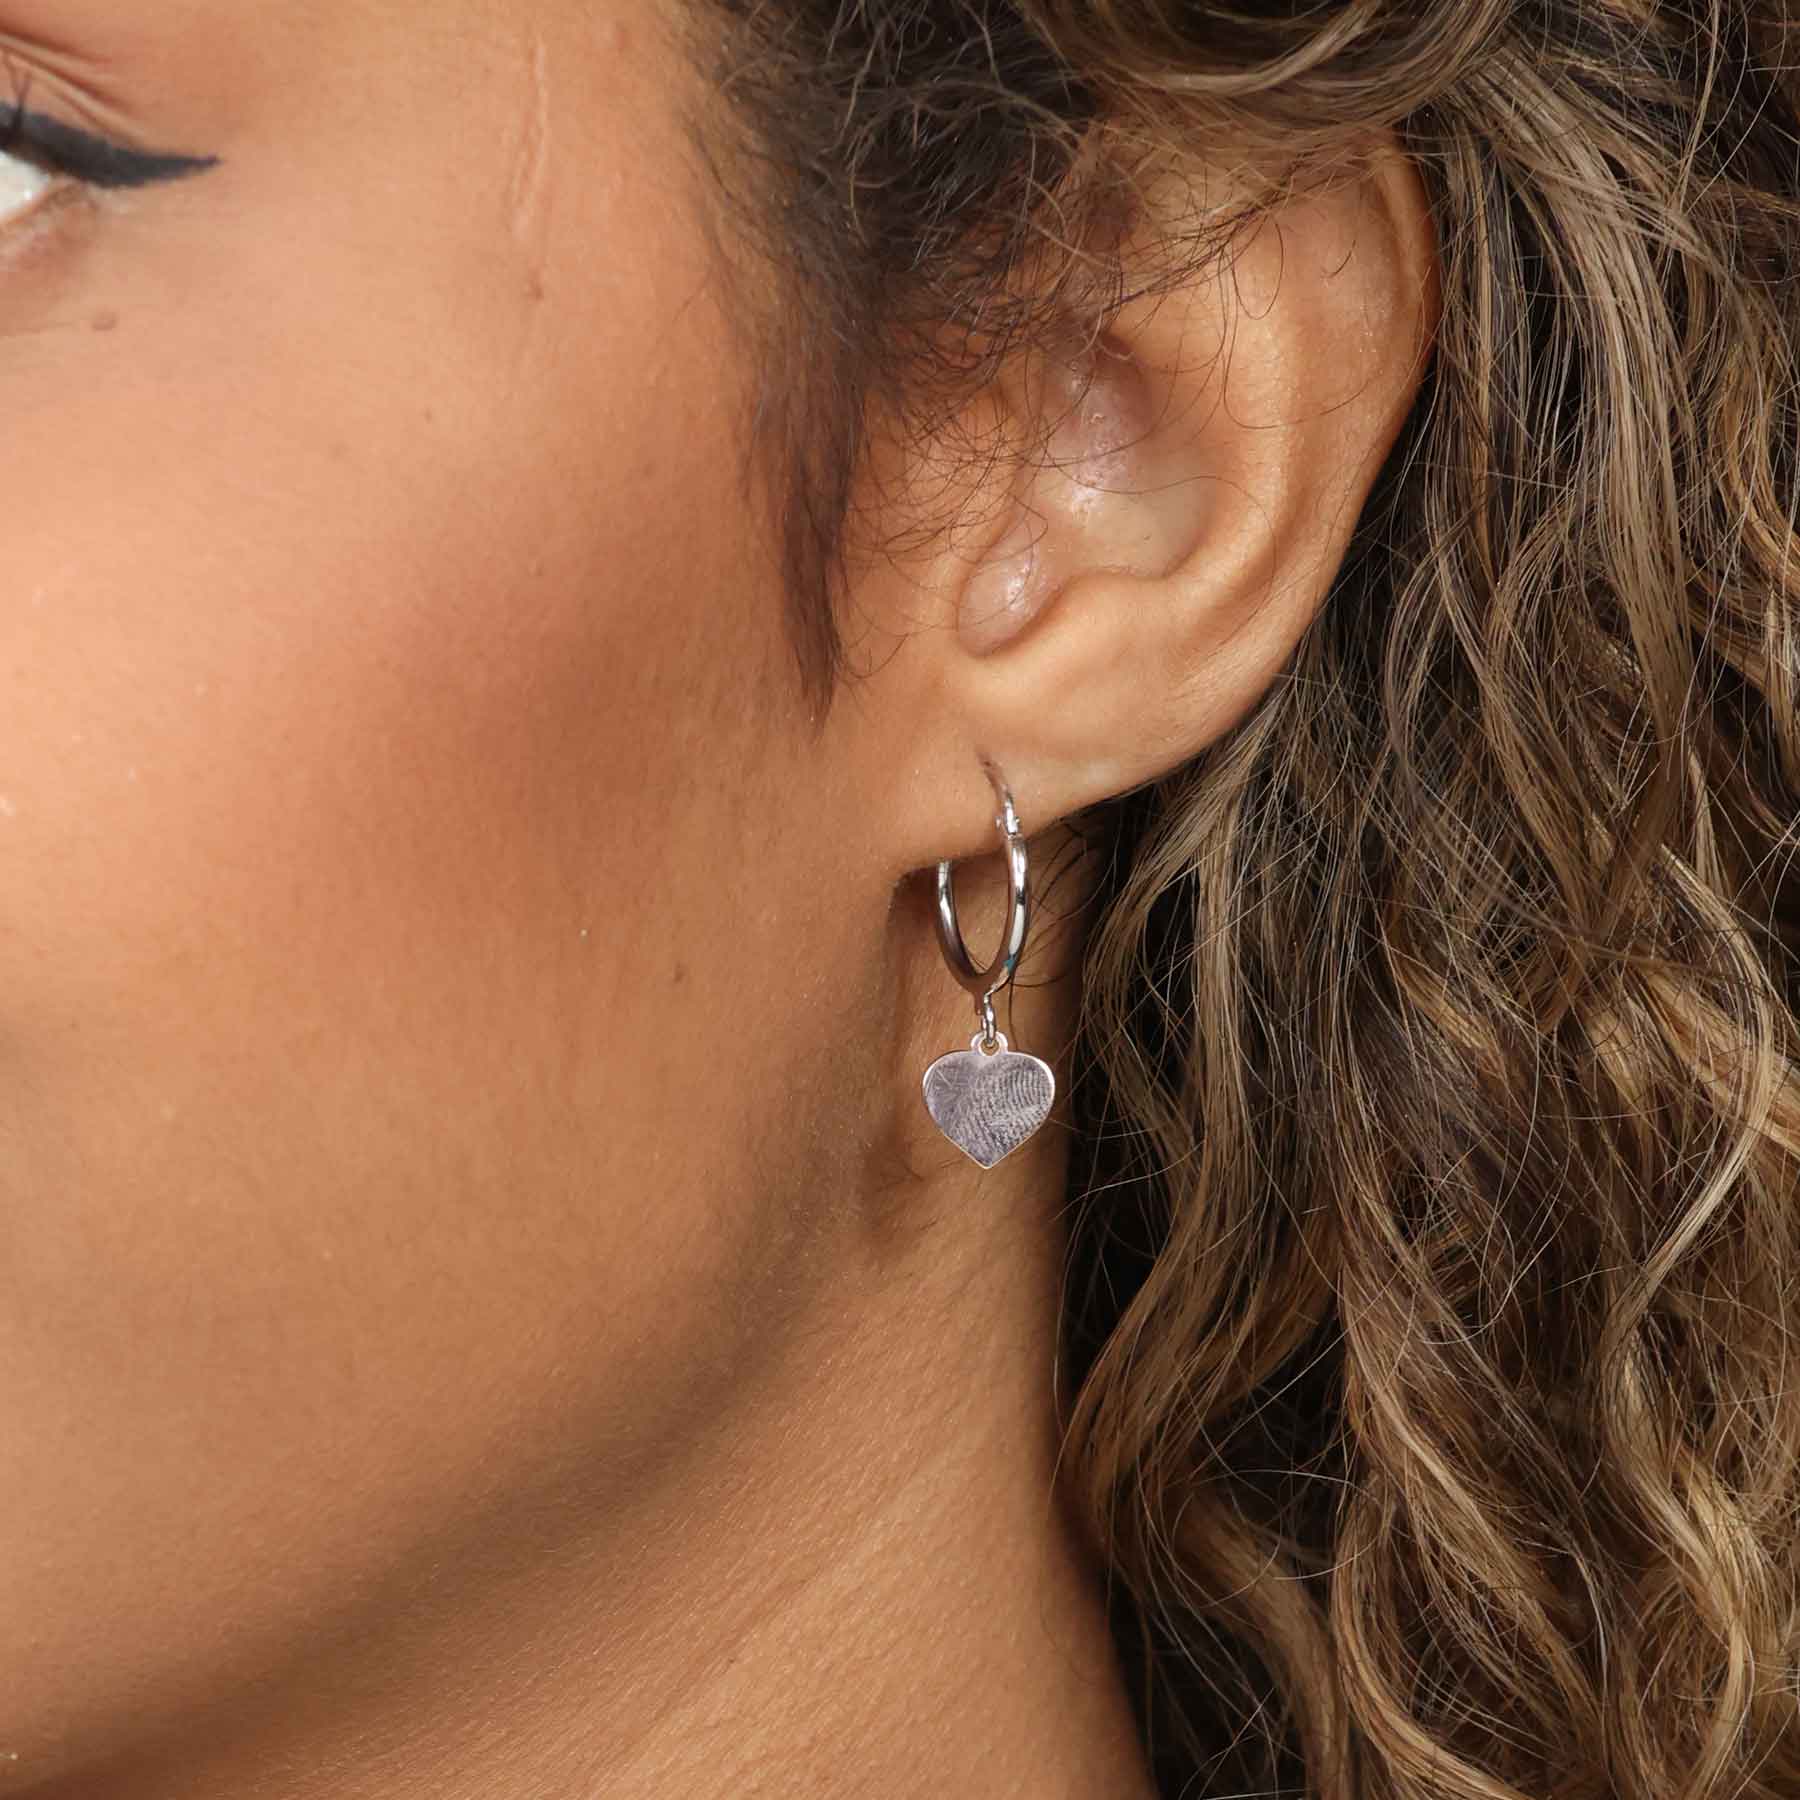 Heart Drop Sterling Silver Earrings, Dangle Heart Earrings, Gift for Wife,  Gift for Girlfriend, Friend Gift Earrings Drop Heart Earrings - Etsy